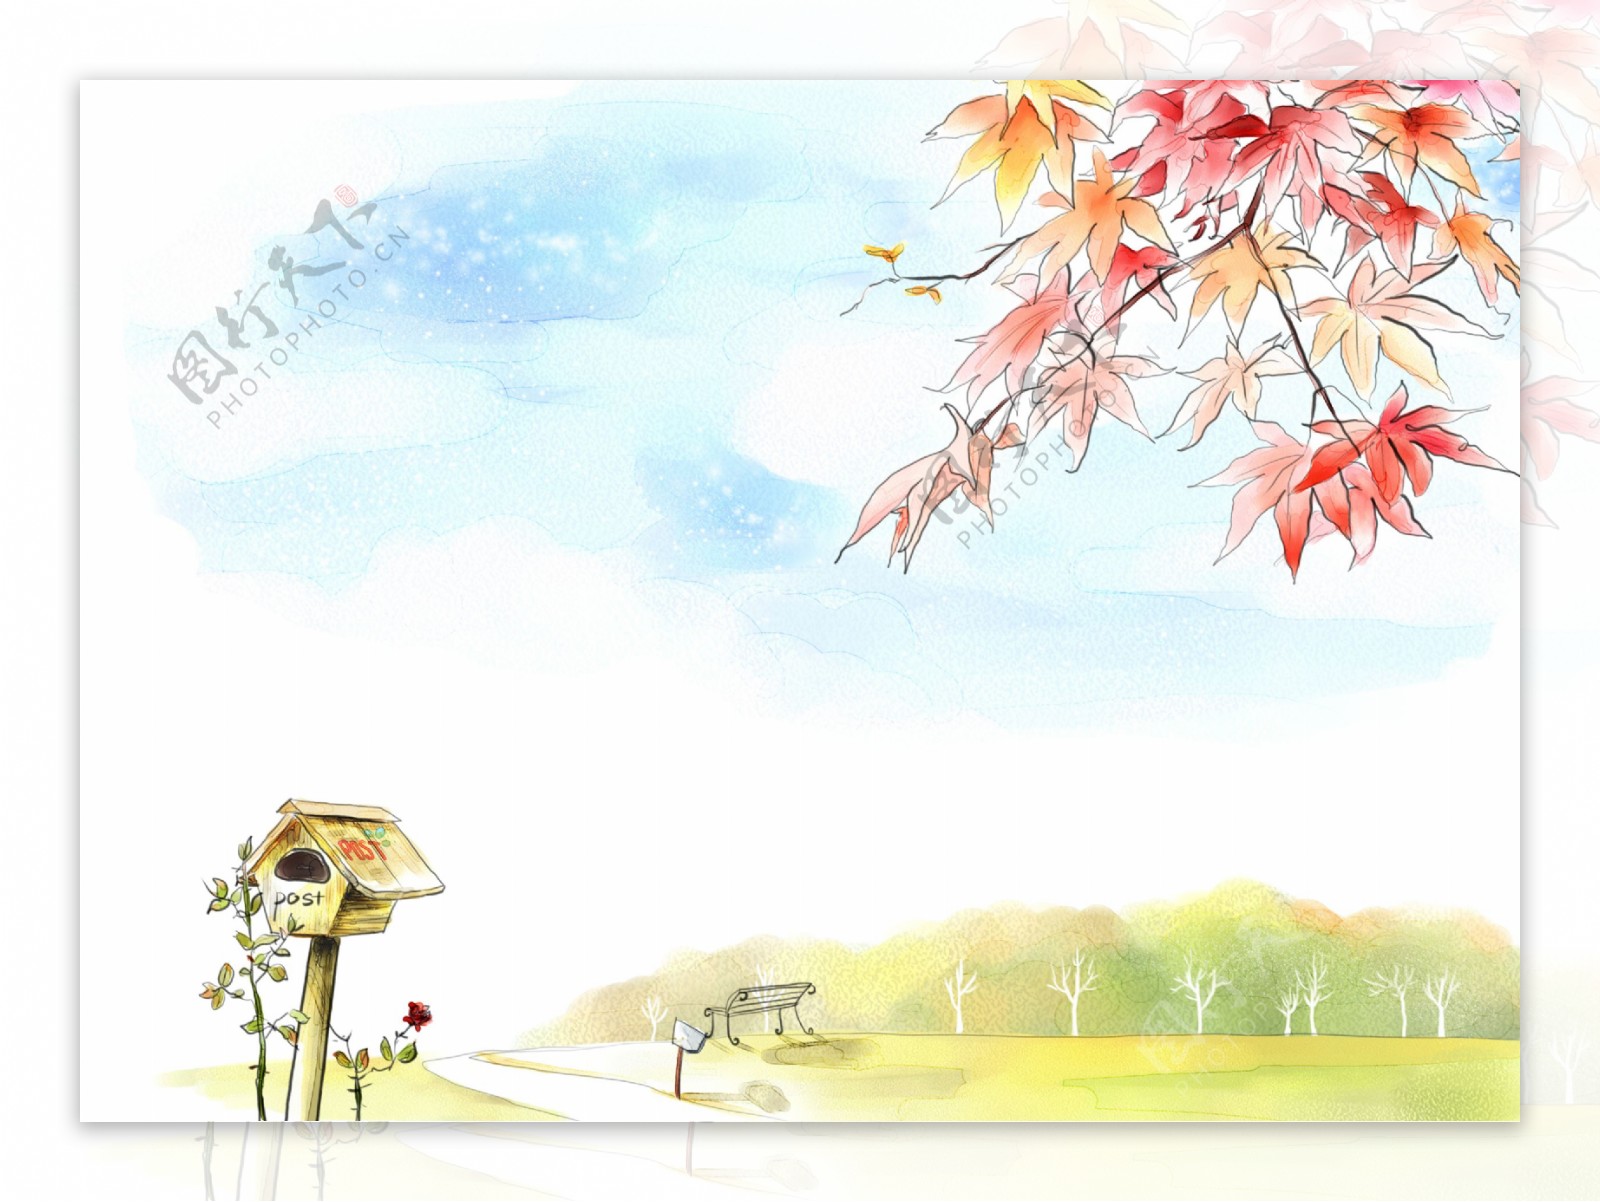 枫叶风景插画图片